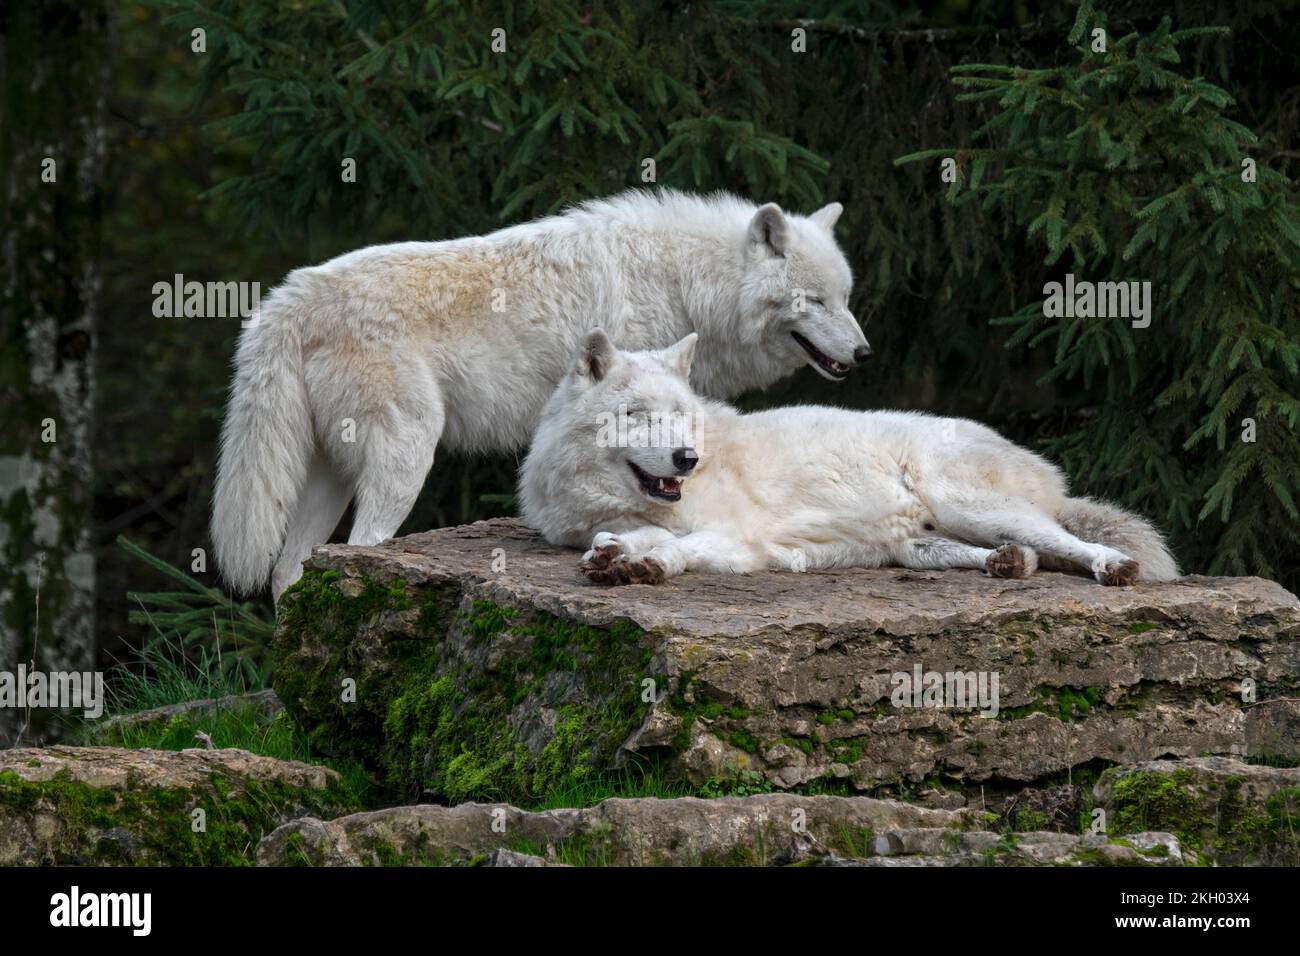 Dos lobos cautivos del Ártico / lobos blancos / lobos polares (Canis lupus arctos) descansando sobre la roca, nativo de la tundra del Alto Ártico de Canadá Foto de stock